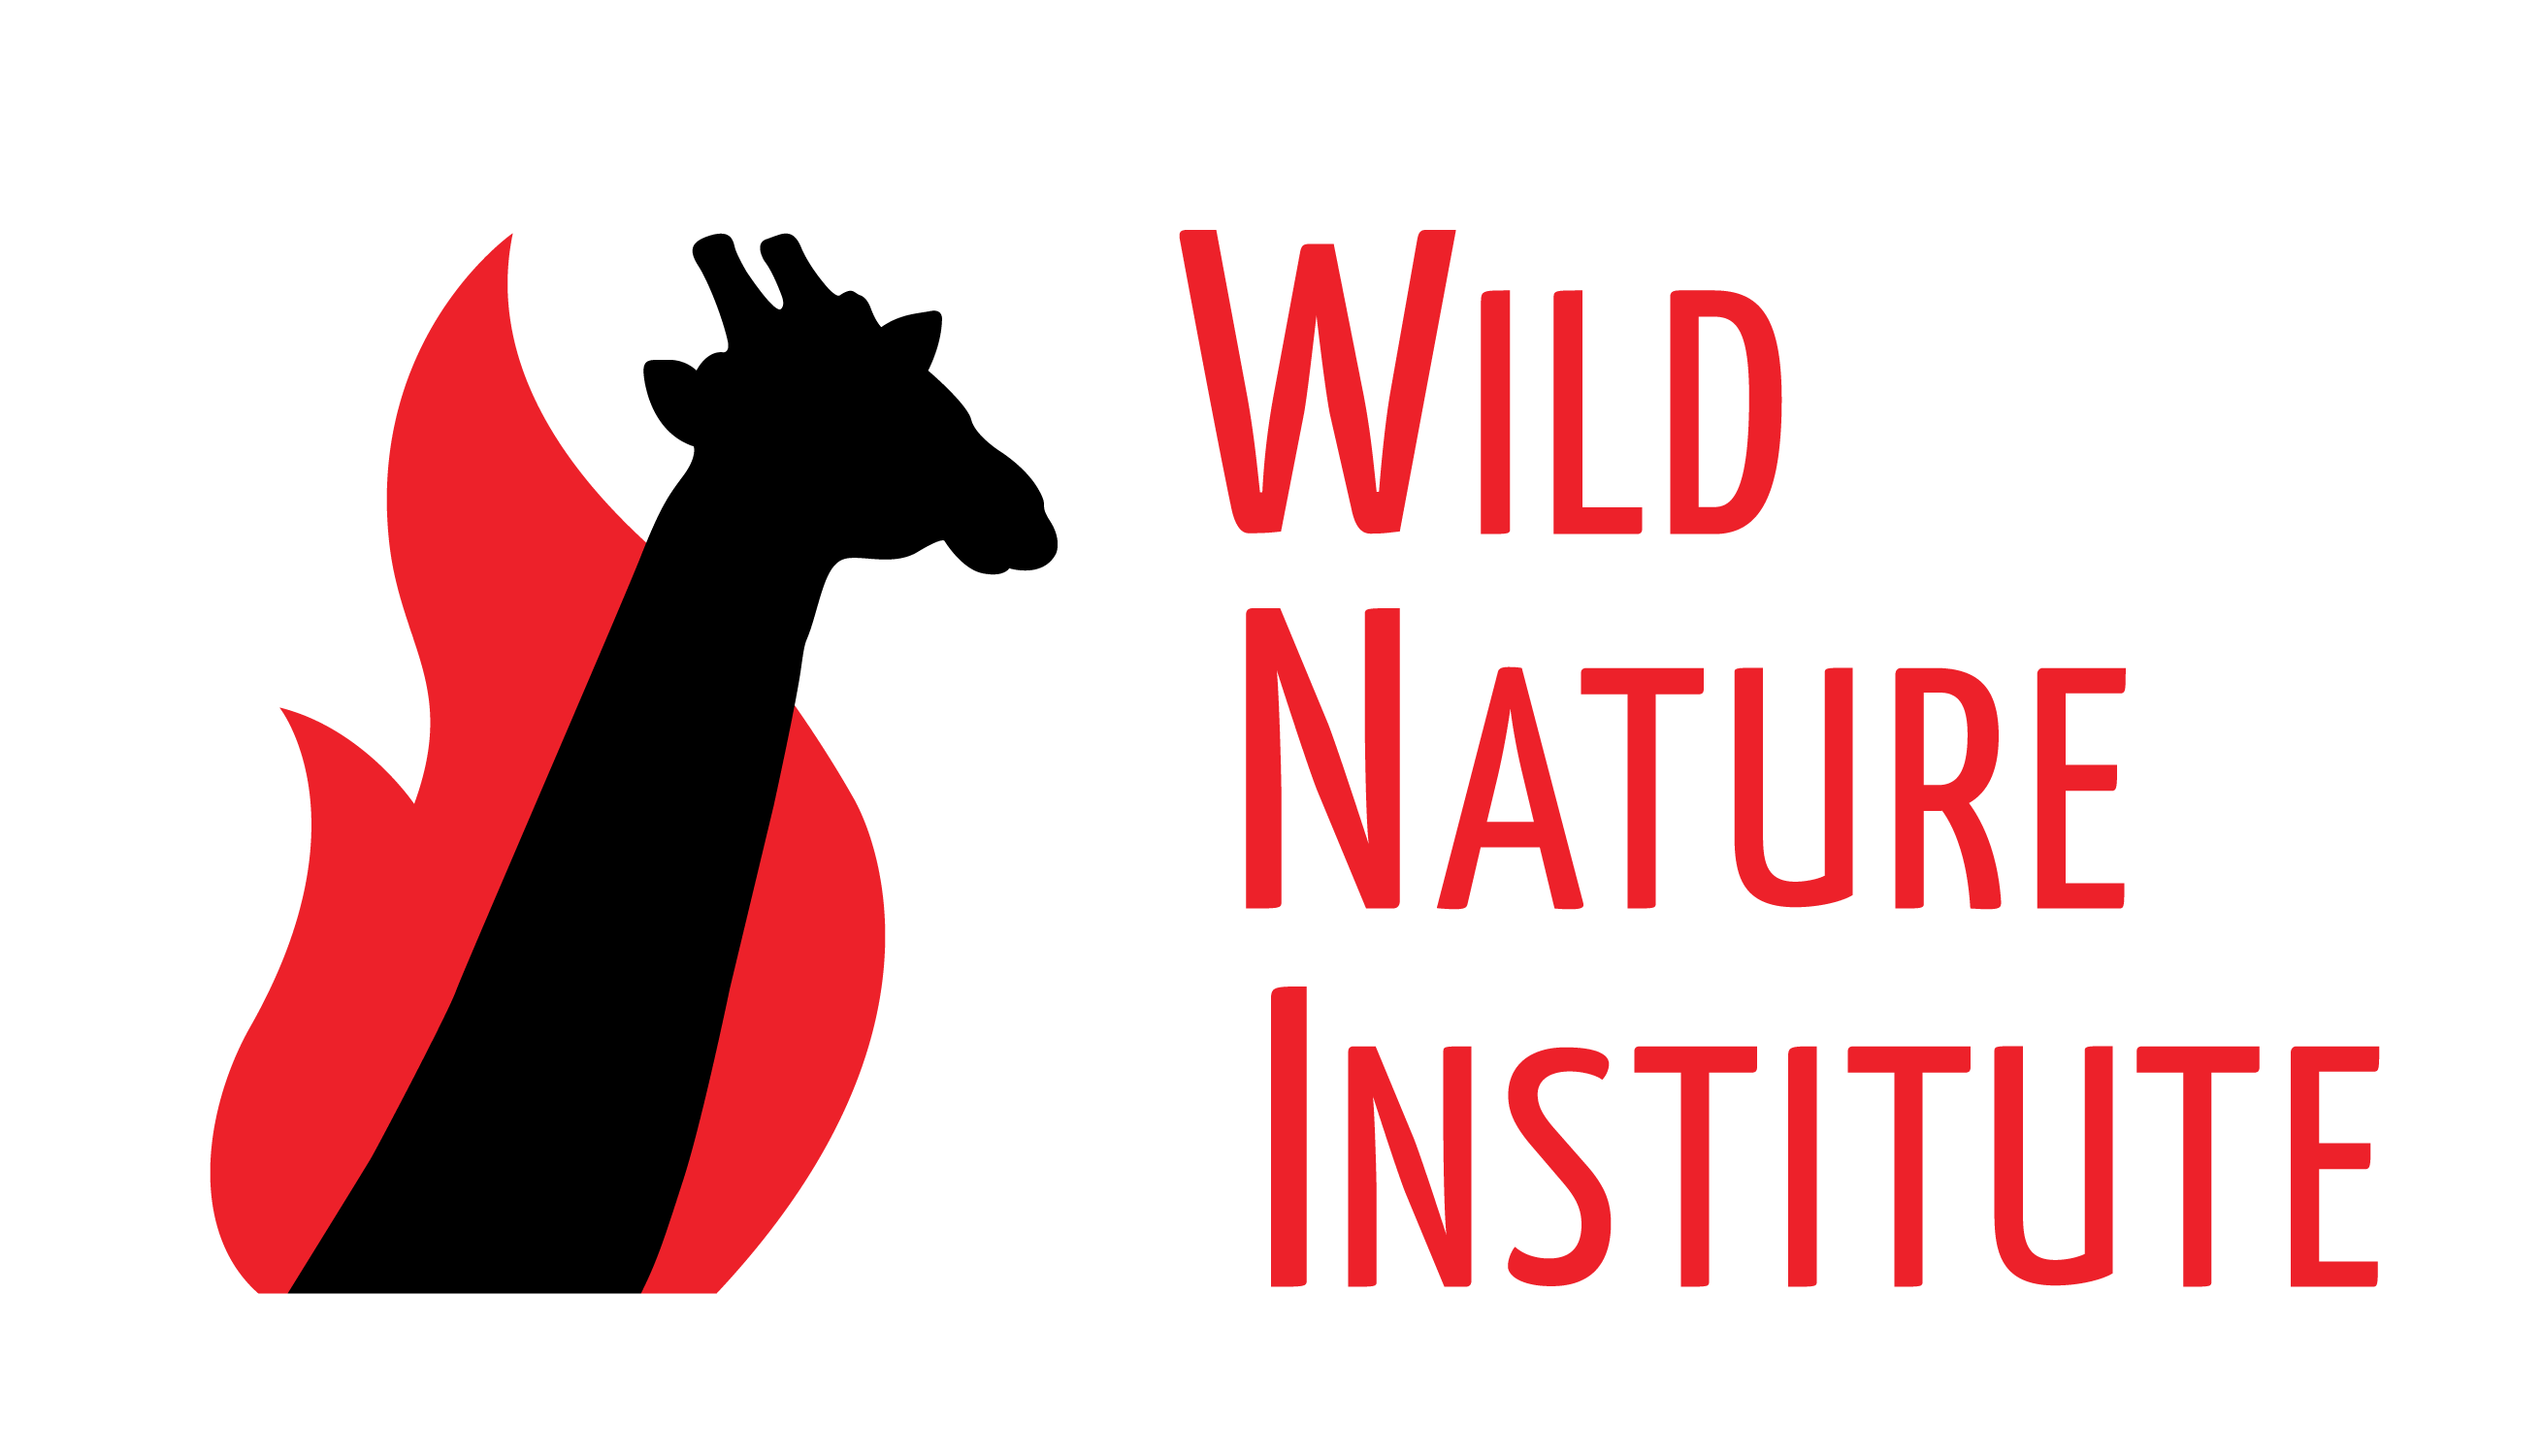 Wild Nature Institute